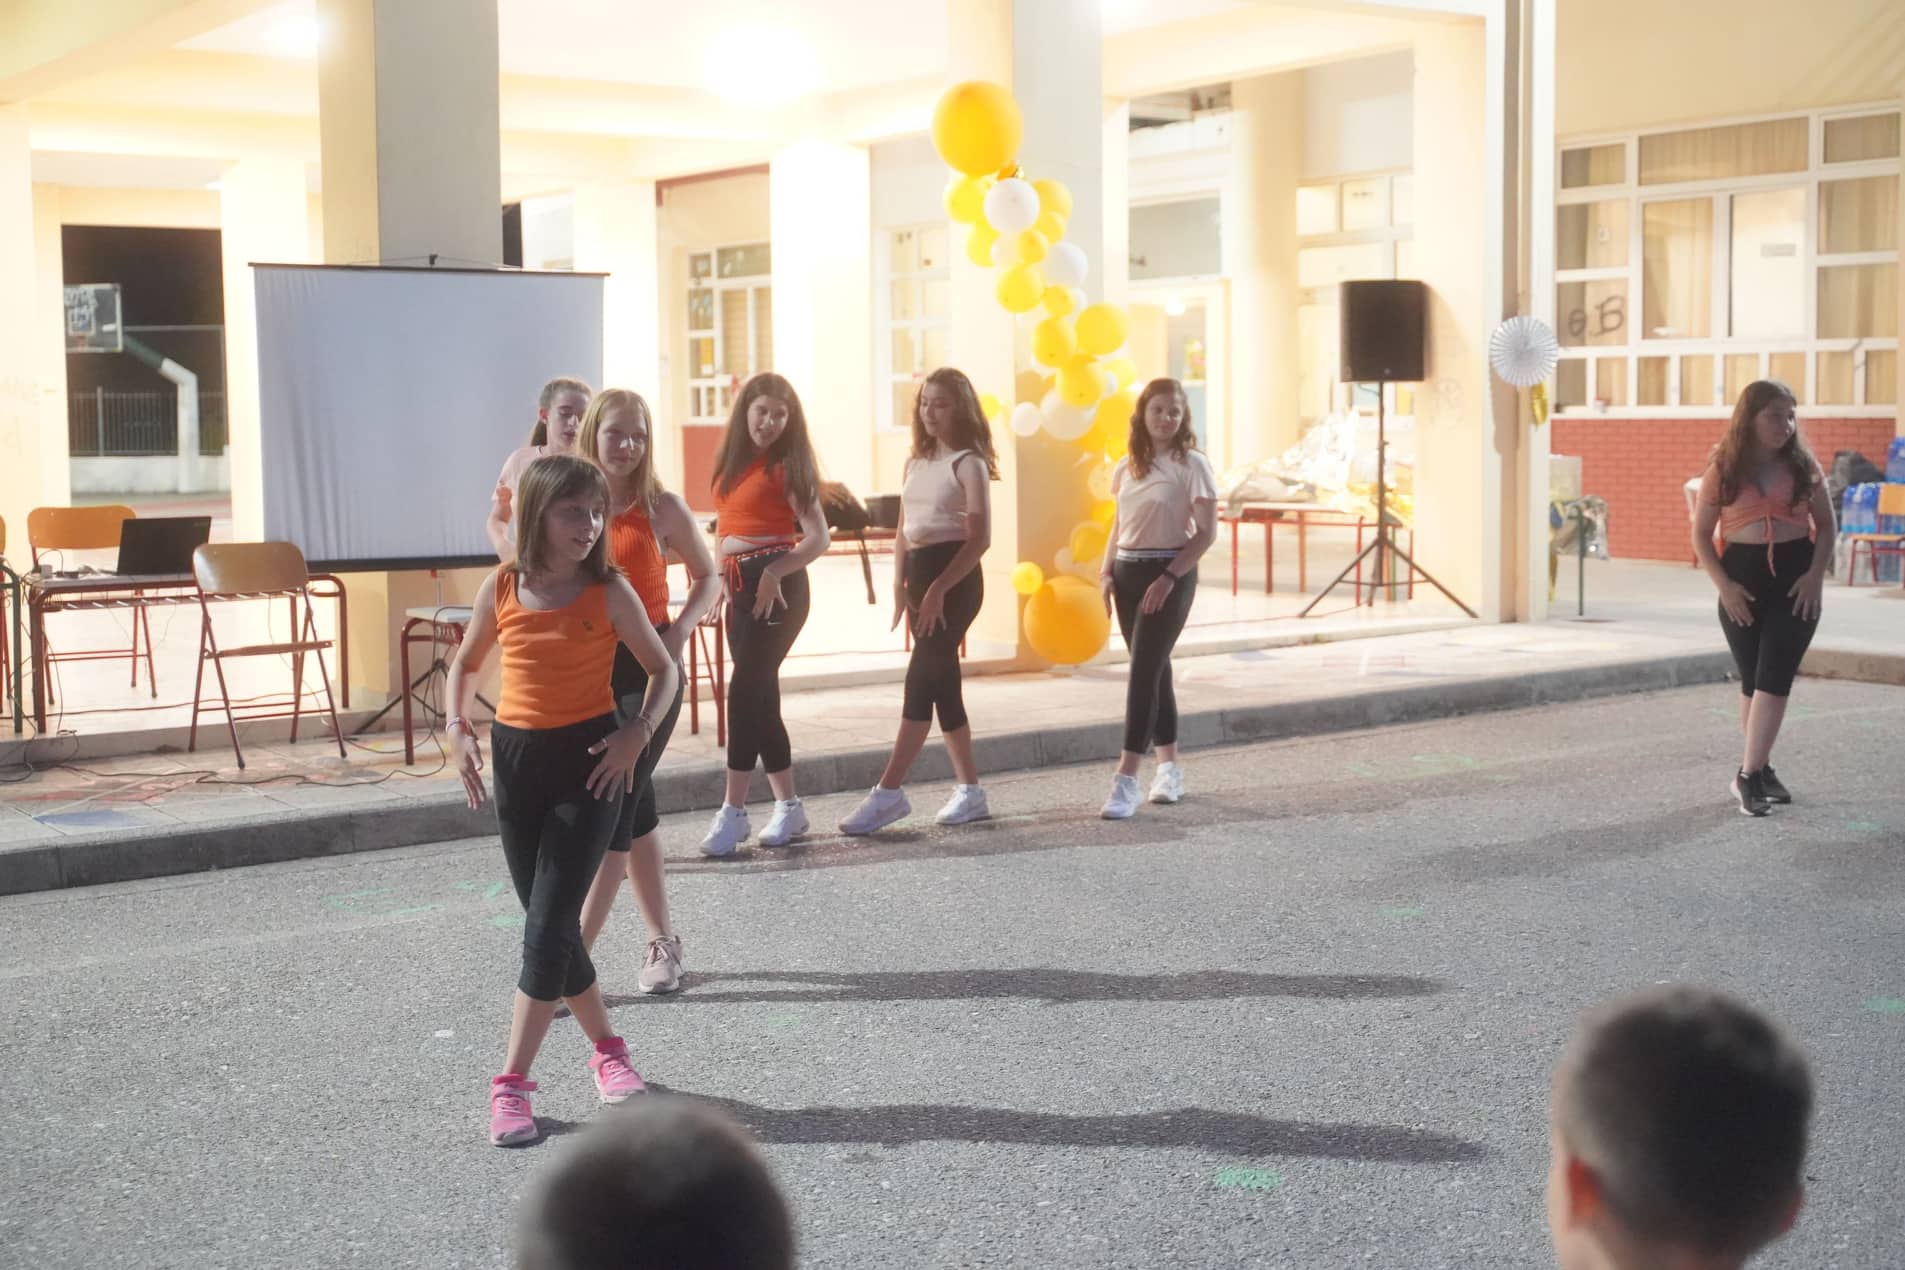 12ο Δημοτικό Σχολείο Αγρινίου: Το διασκέδασαν στην τελετή λήξης της χρονιάς